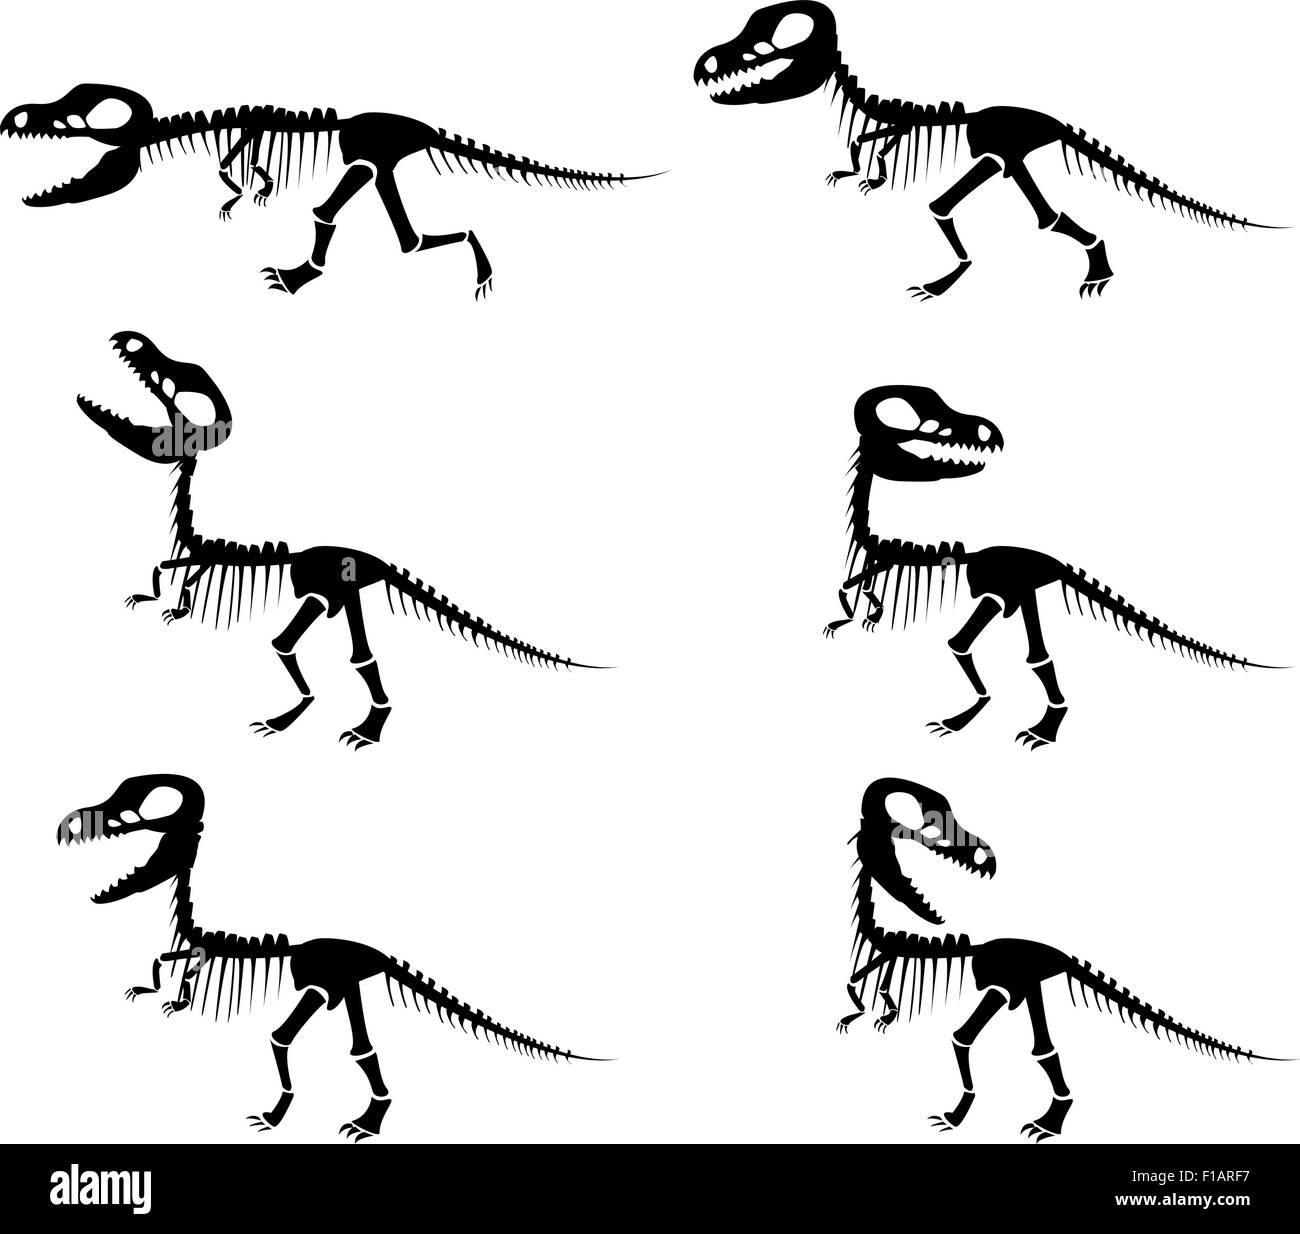 Isolierten Vector Silhouetten der das Skelett eines Dinosauriers Tyrannosaurus Rex im Silhouette Stil. Stock Vektor